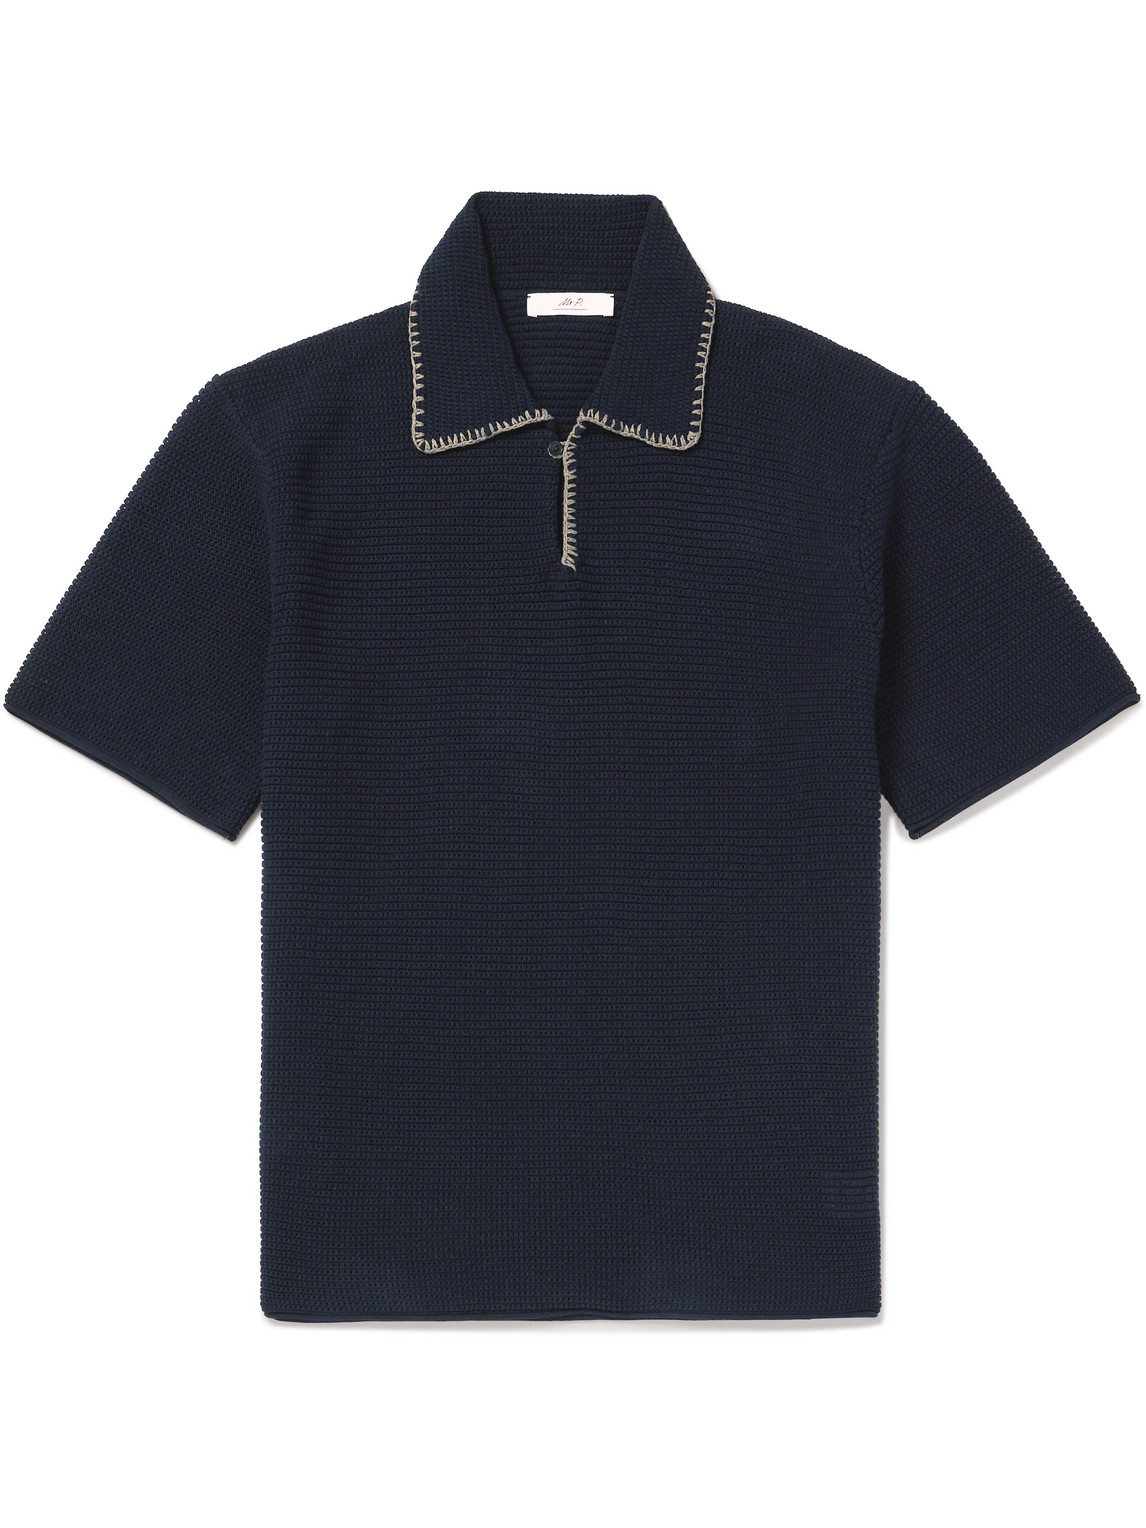 Mr P. - Embroidered Cotton Polo Shirt - Men - Blue - S von Mr P.